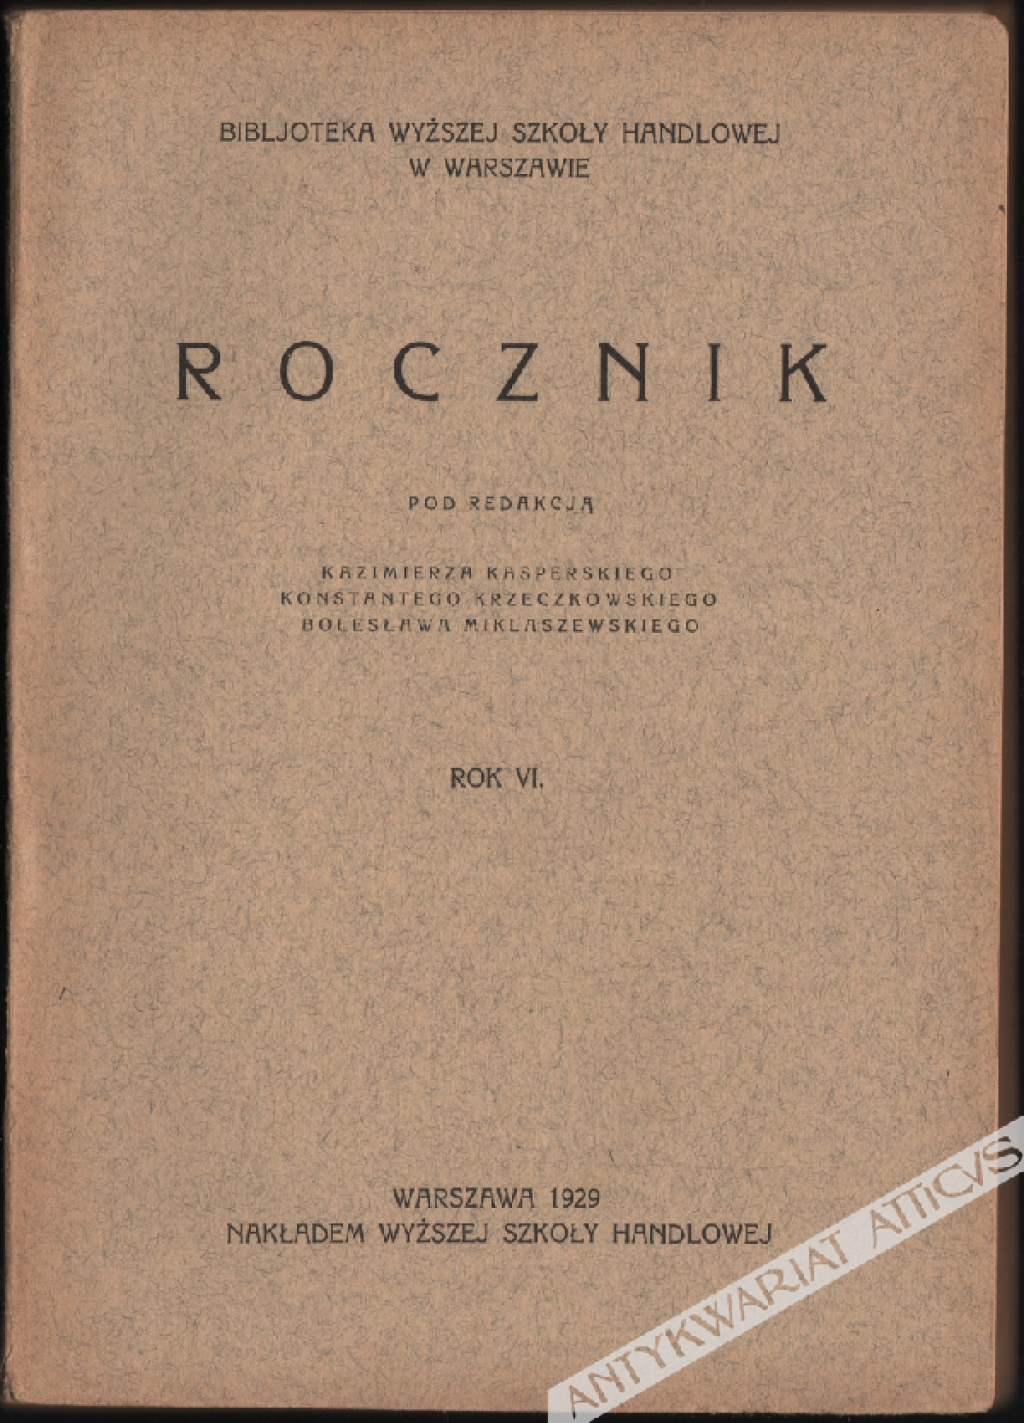 Rocznik (Bibjoteka Wyższej Szkoły Handlowej), Rok VI 